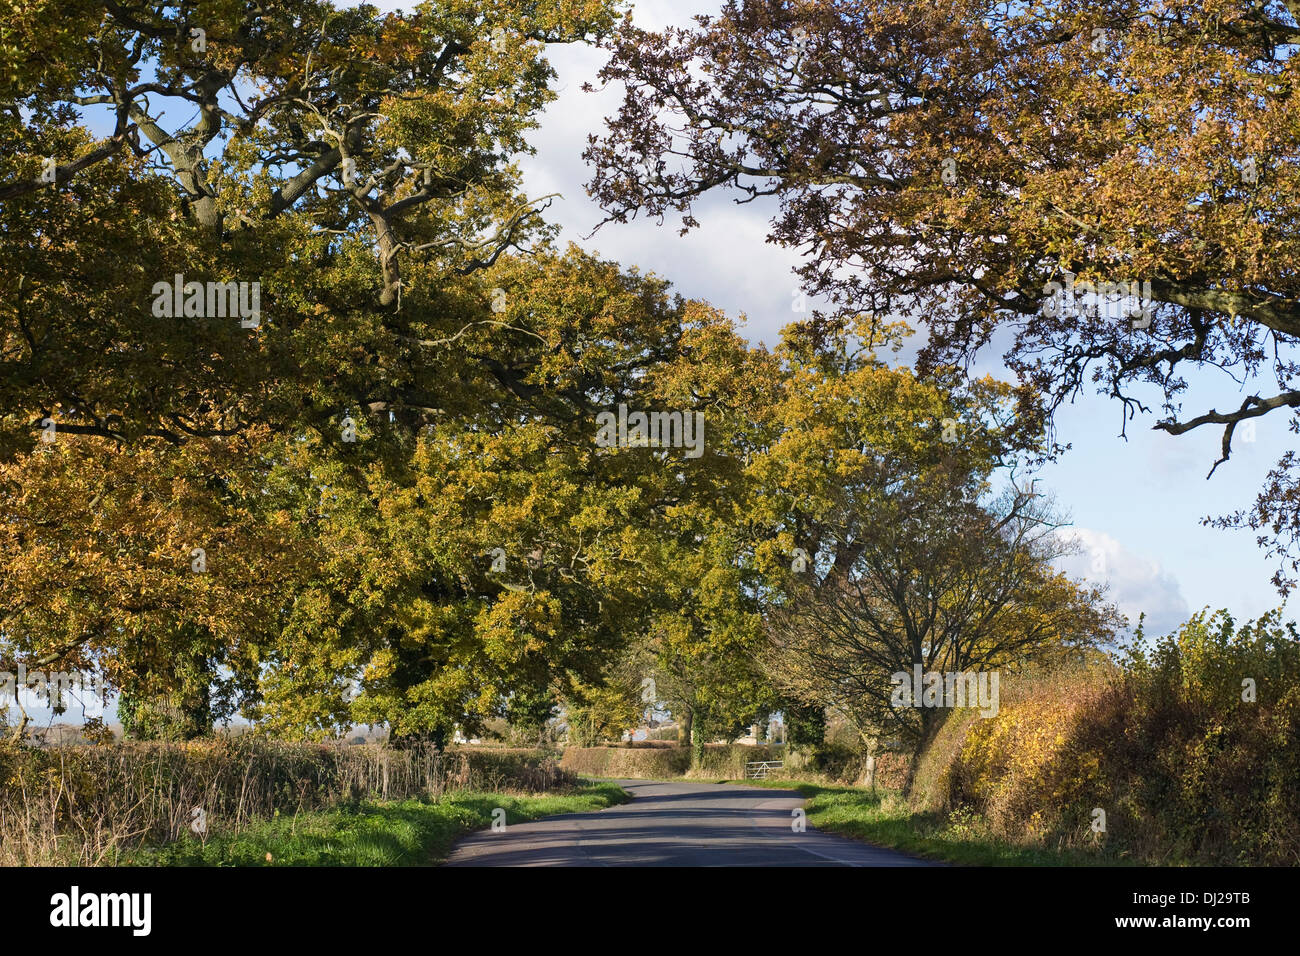 Los árboles de roble inglés forrando un carril del país en otoño. Foto de stock